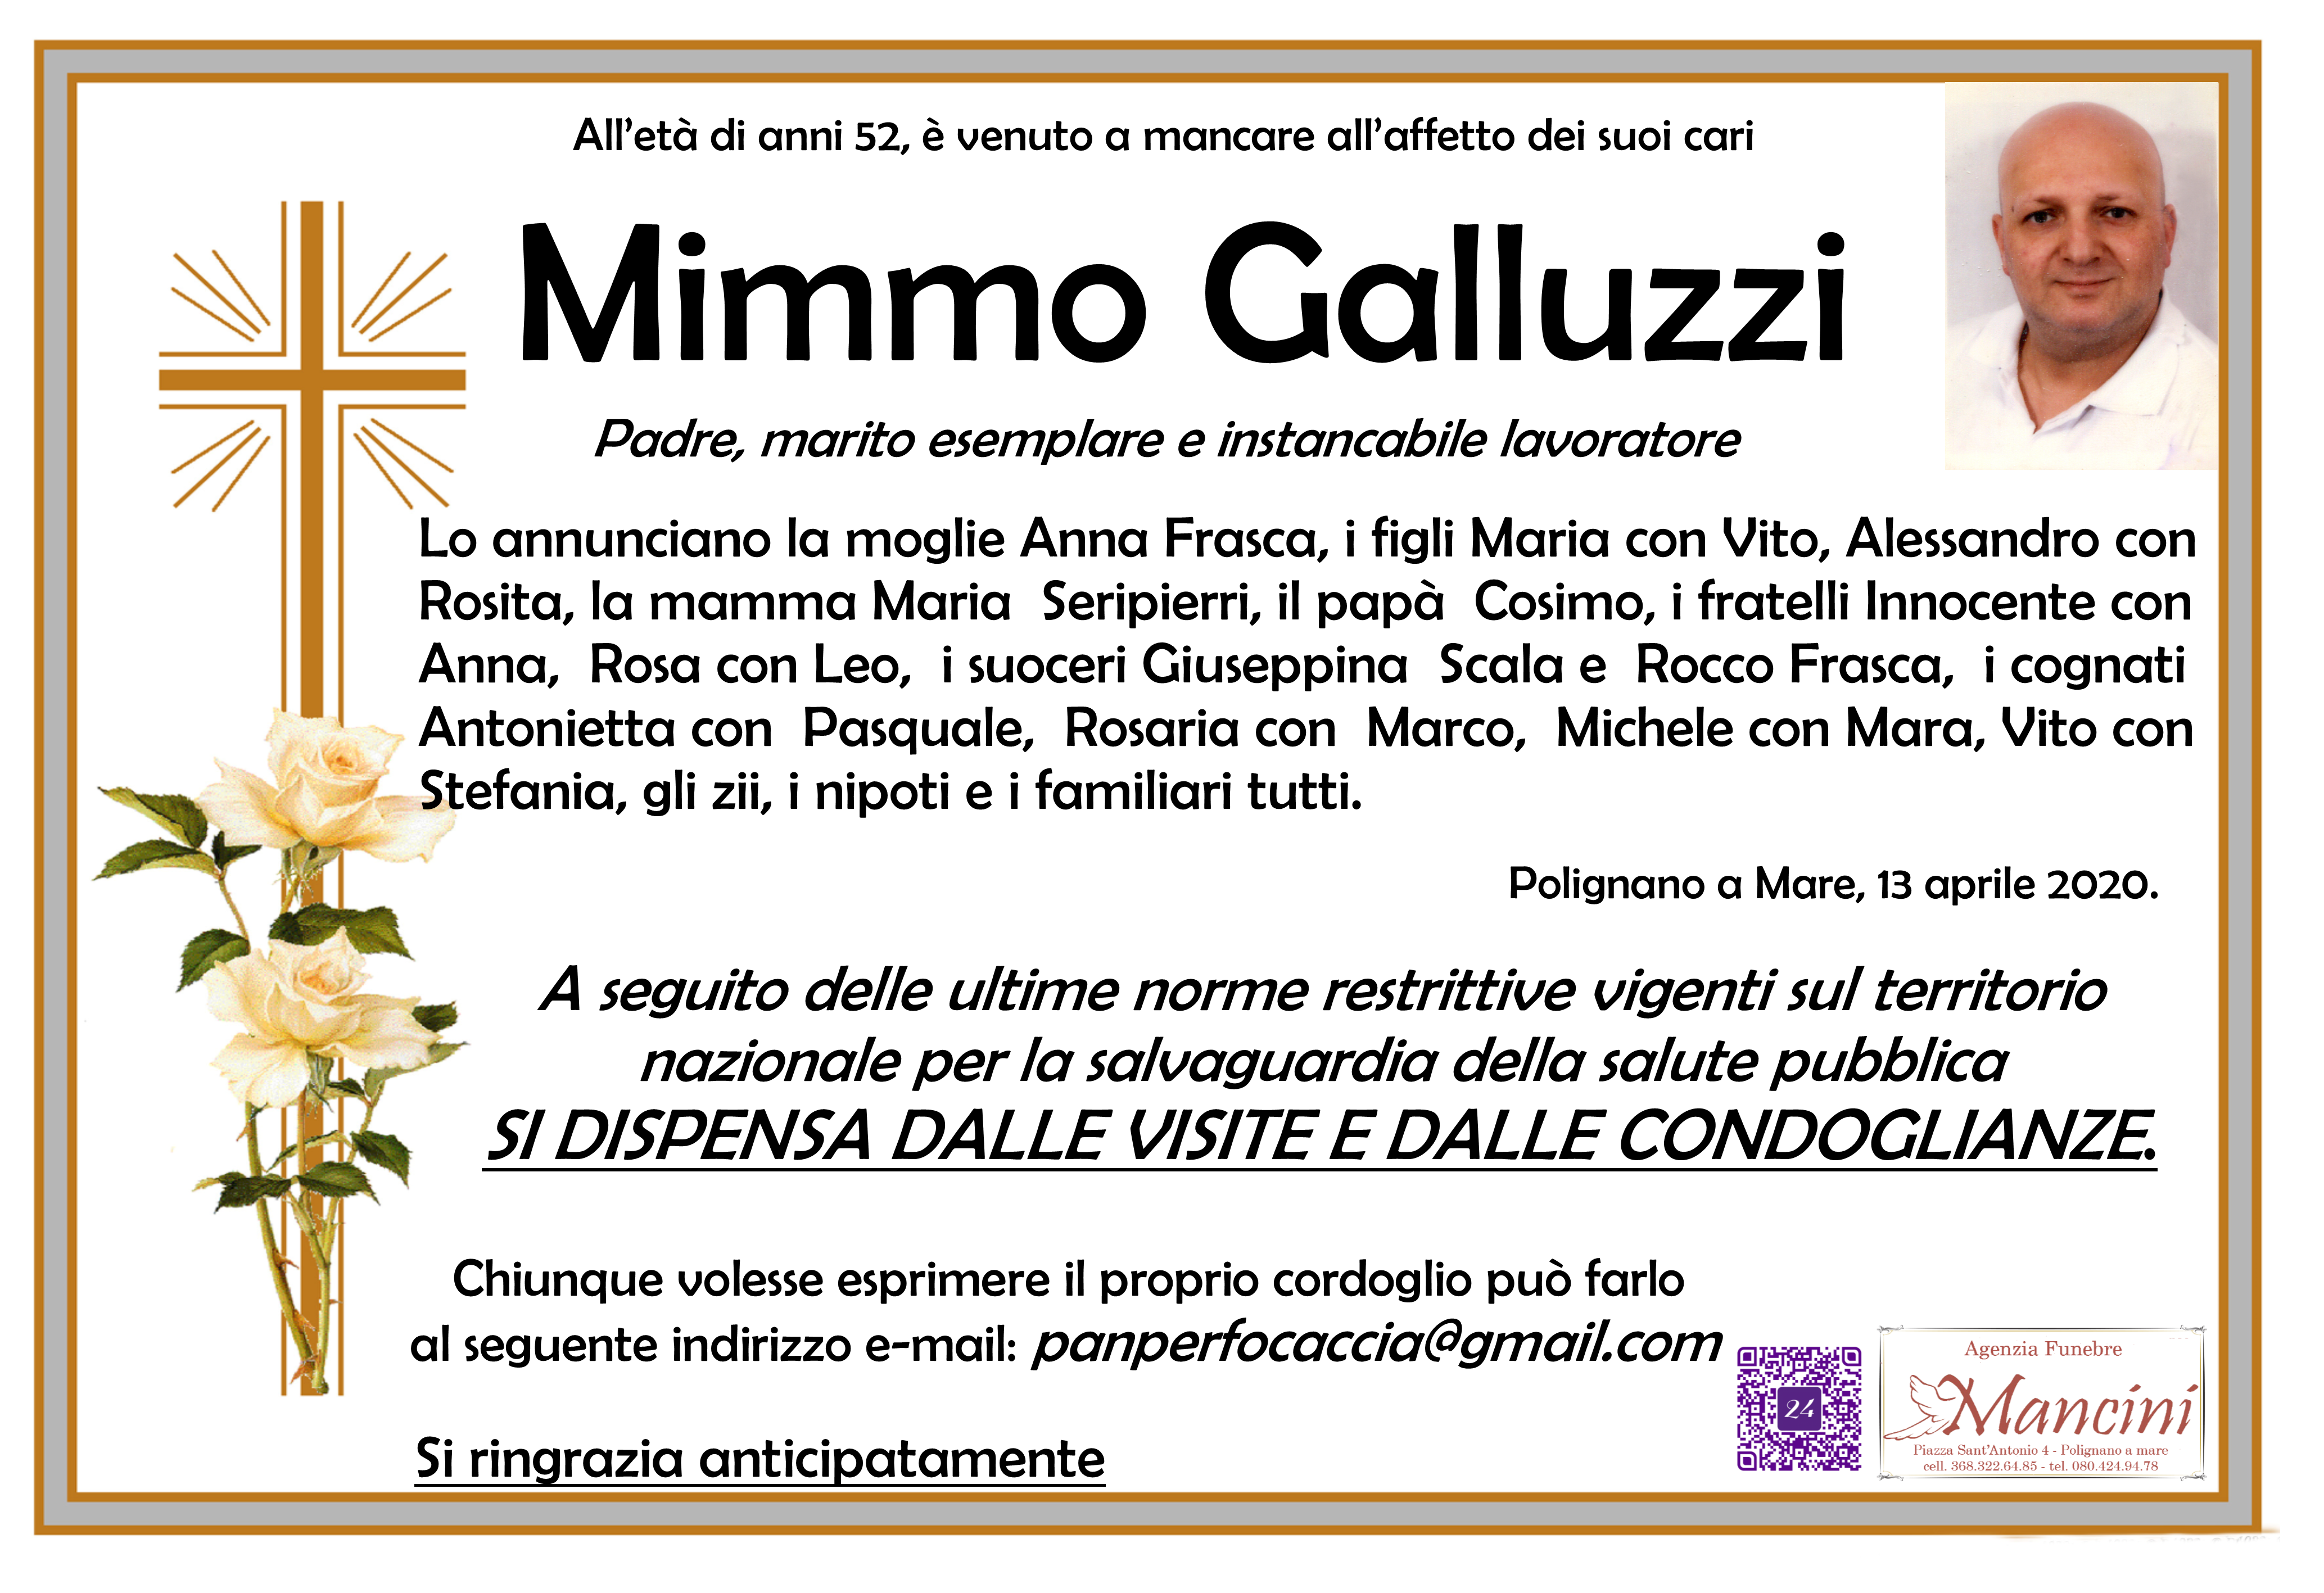 Mimmo Galluzzi